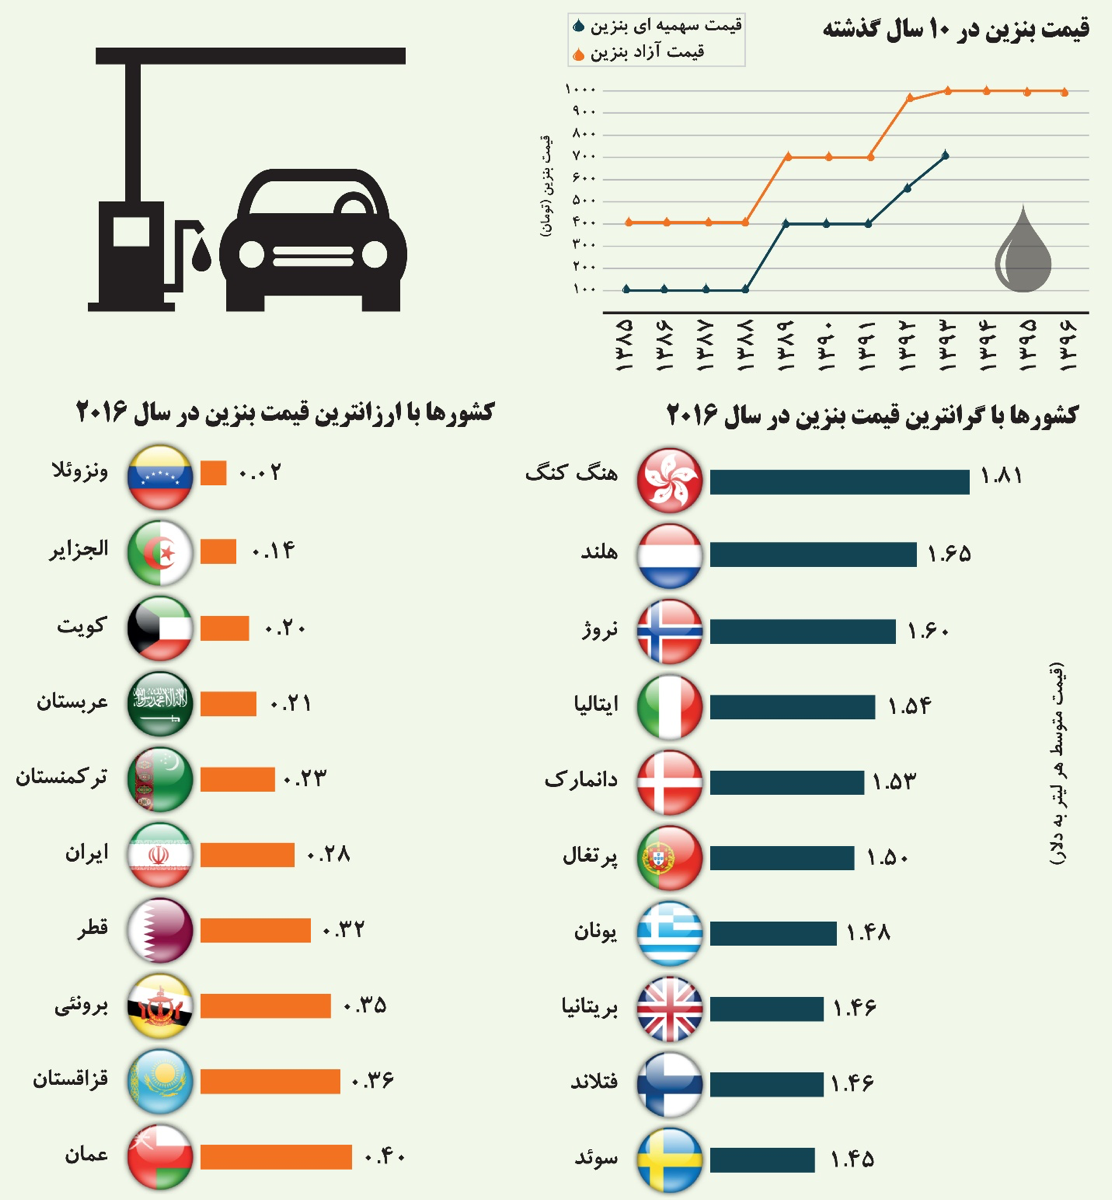 ایران، ششمین کشور ارزان قیمت بنزین